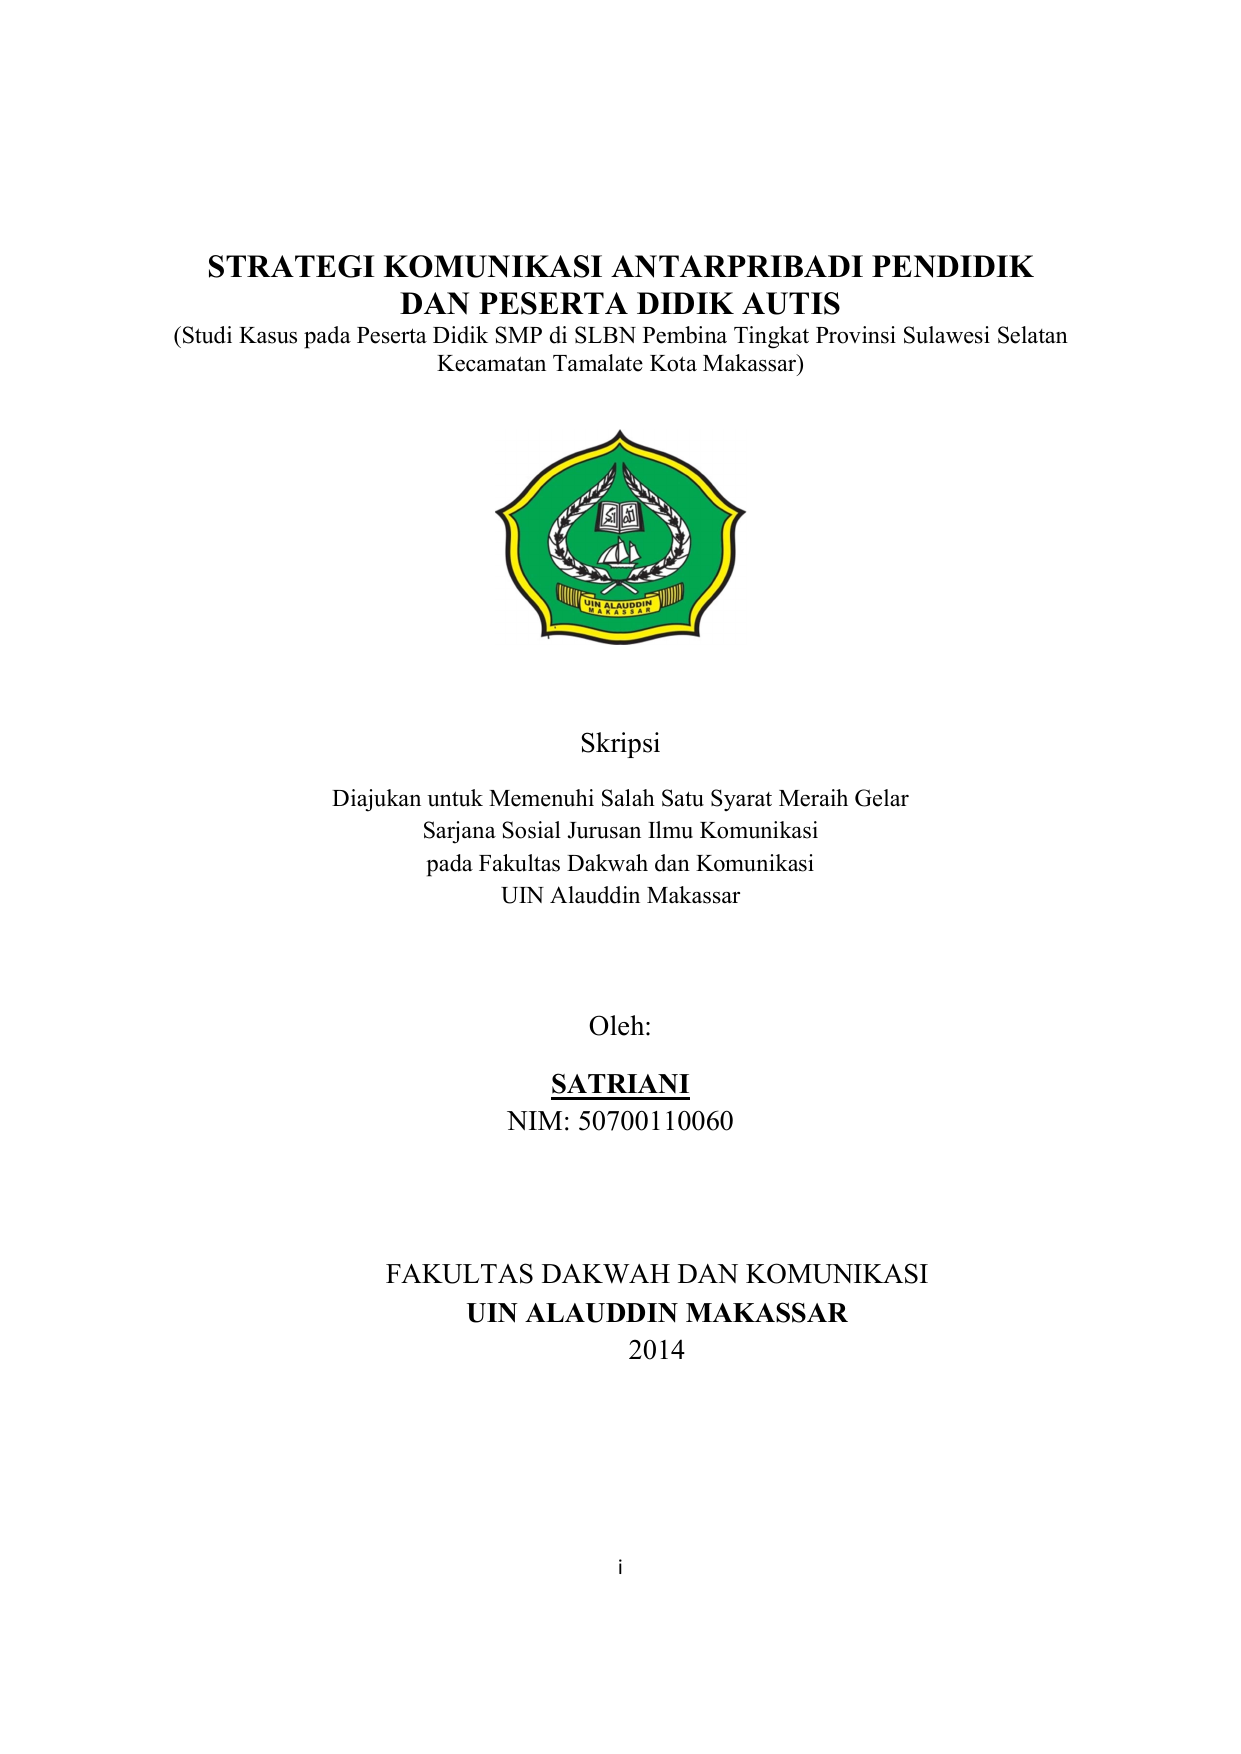 Studi Kasus pada Peserta Didik SMP di SLBN Pembina Tingkat Provinsi Sulawesi Selatan Kecamatan Tamalate Kota Makassar Skripsi Diajukan untuk Memenuhi